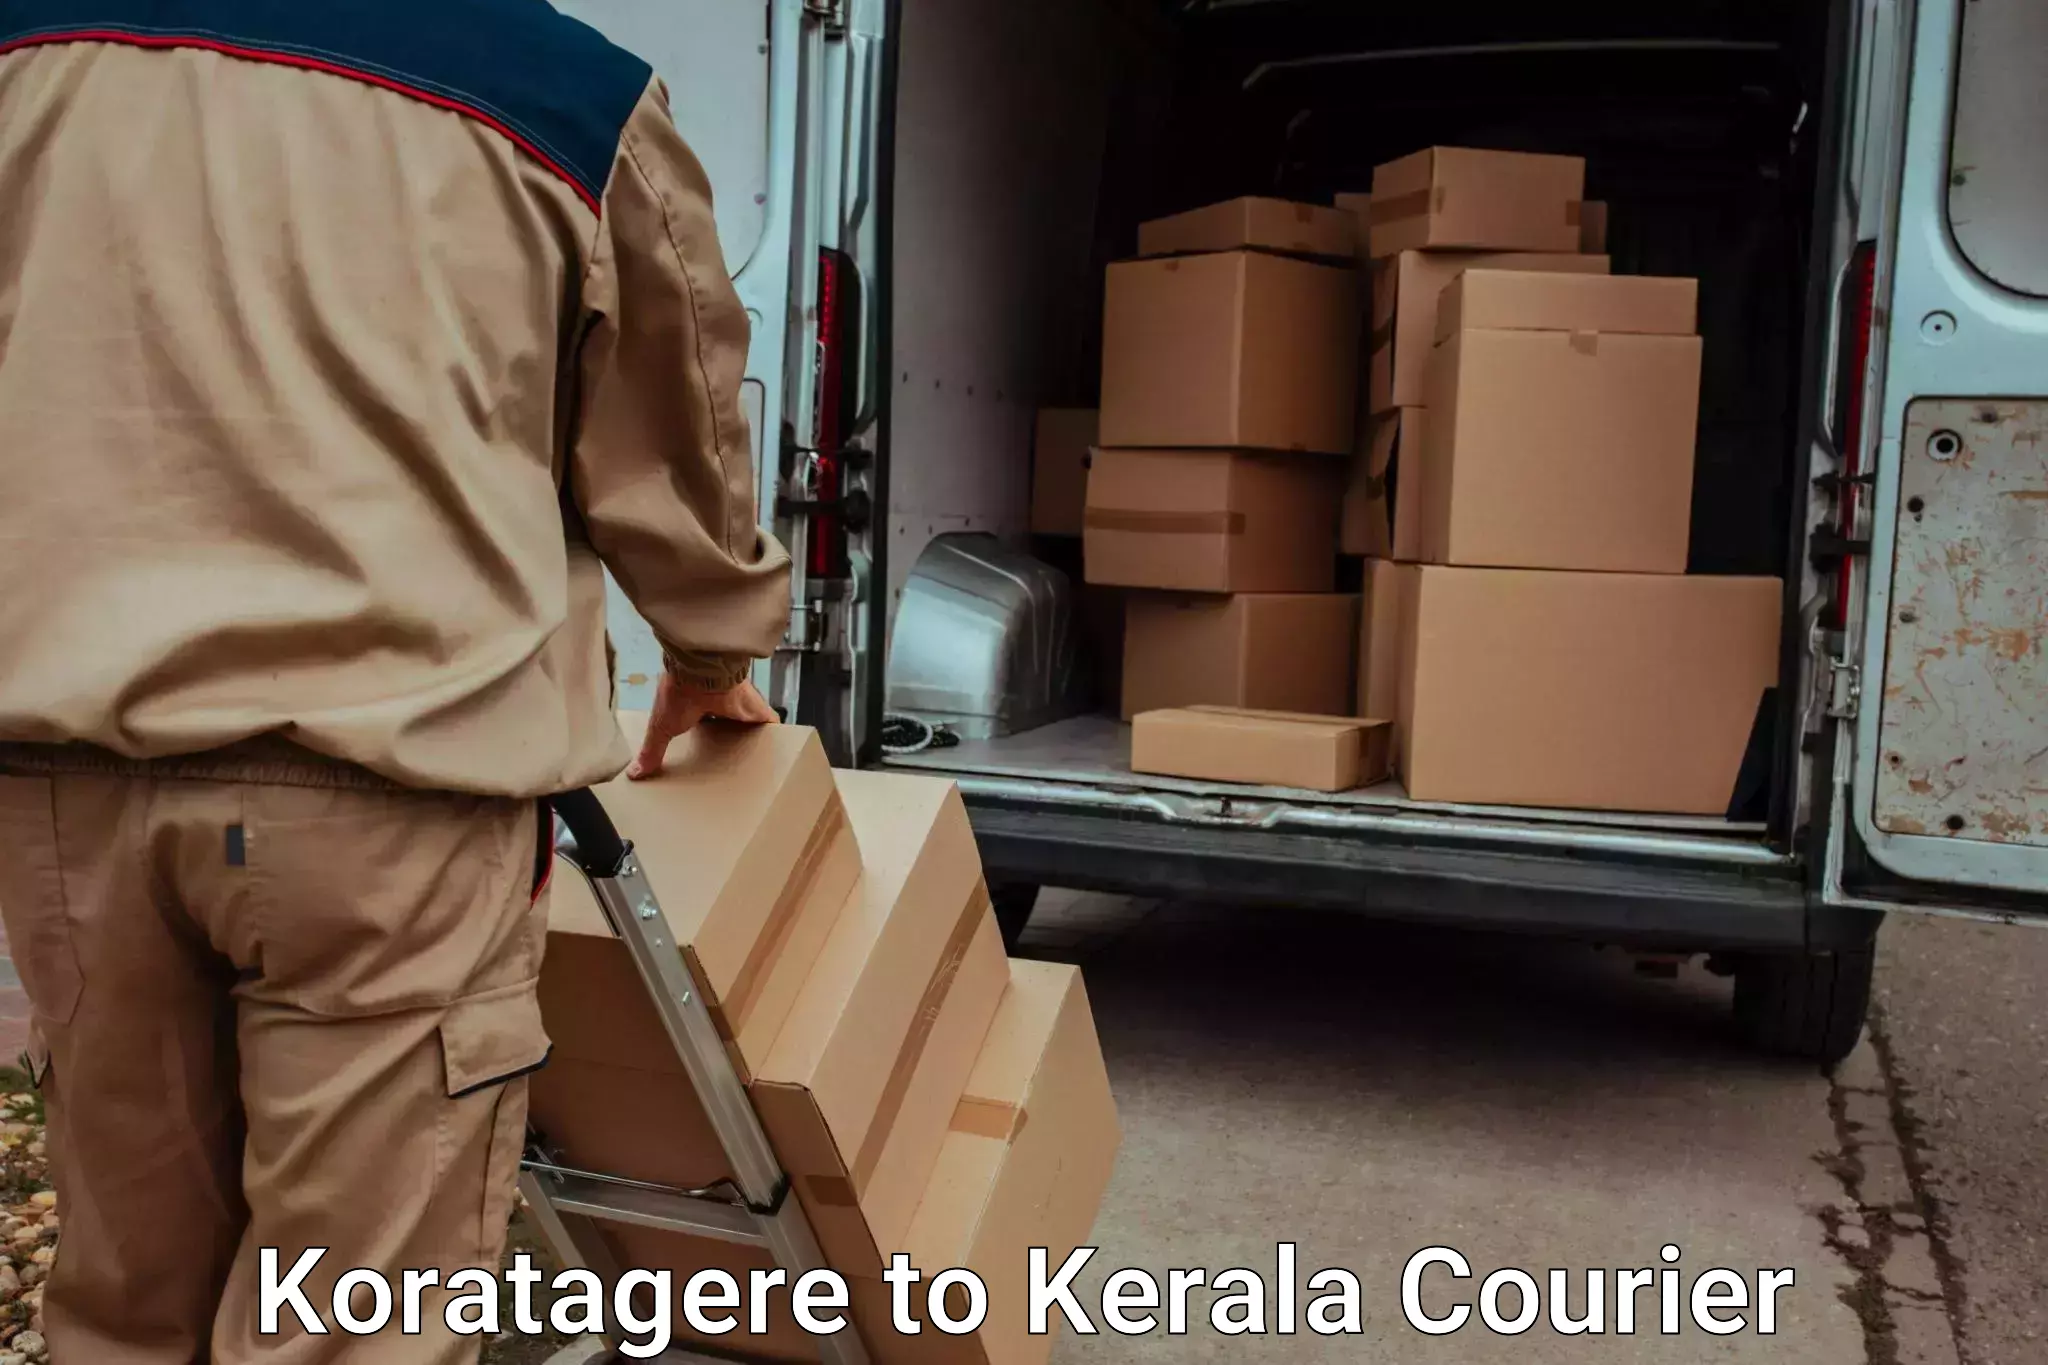 Emergency baggage service Koratagere to Kuchi